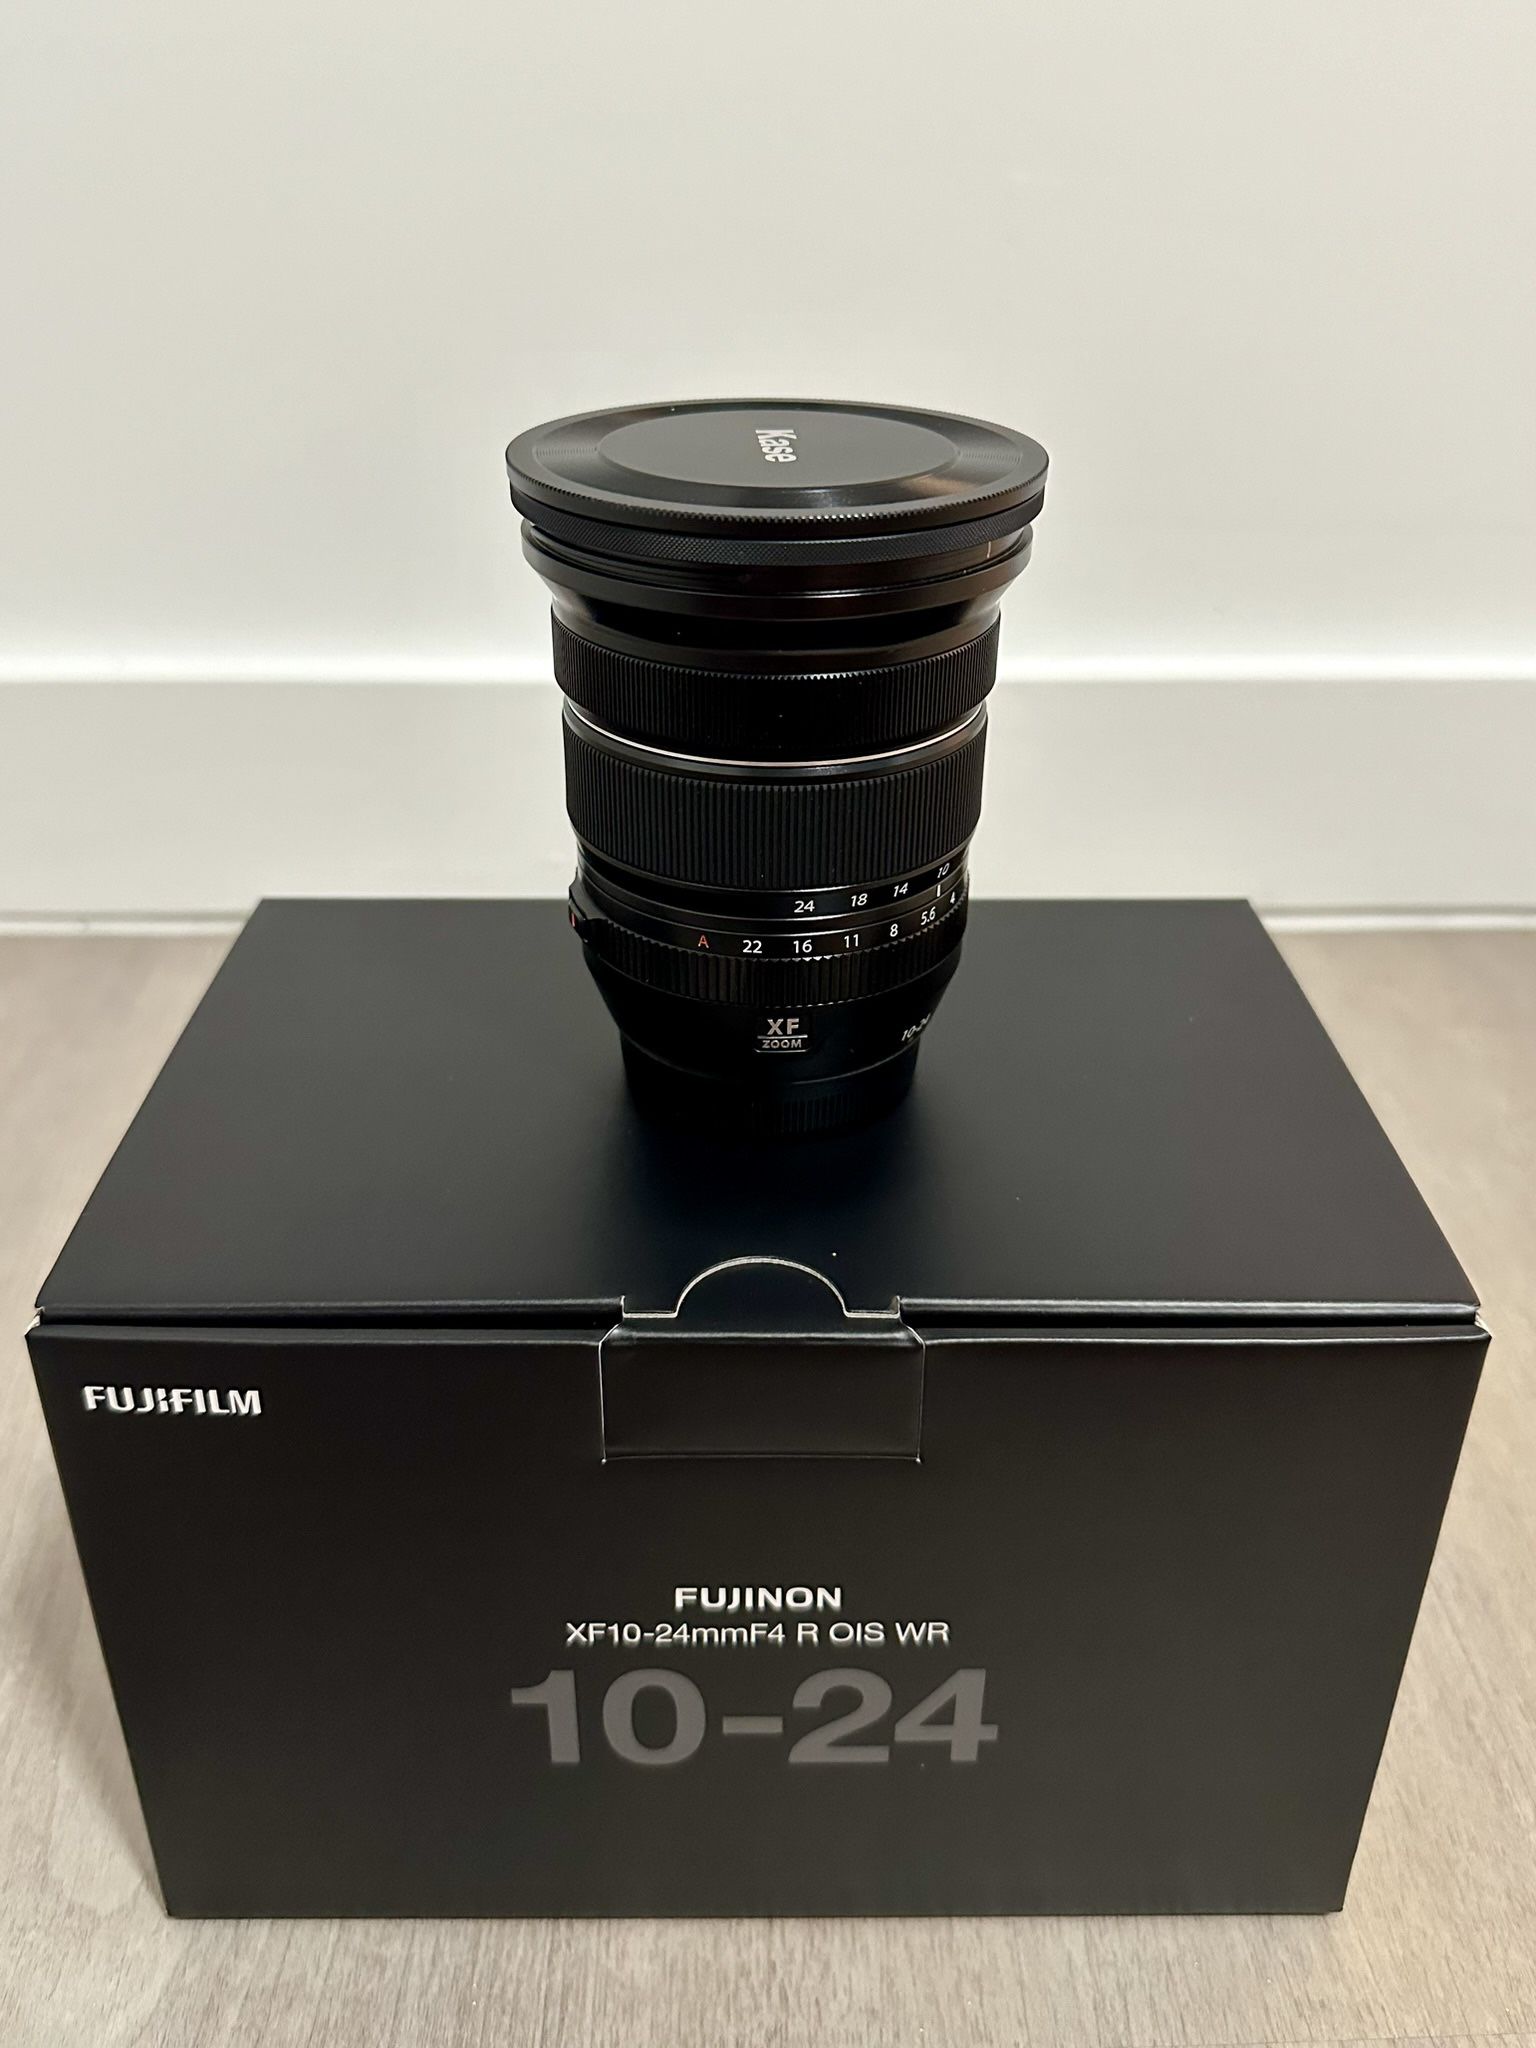 Fujifilm XF10-24mm F4 R OIS WR Lens